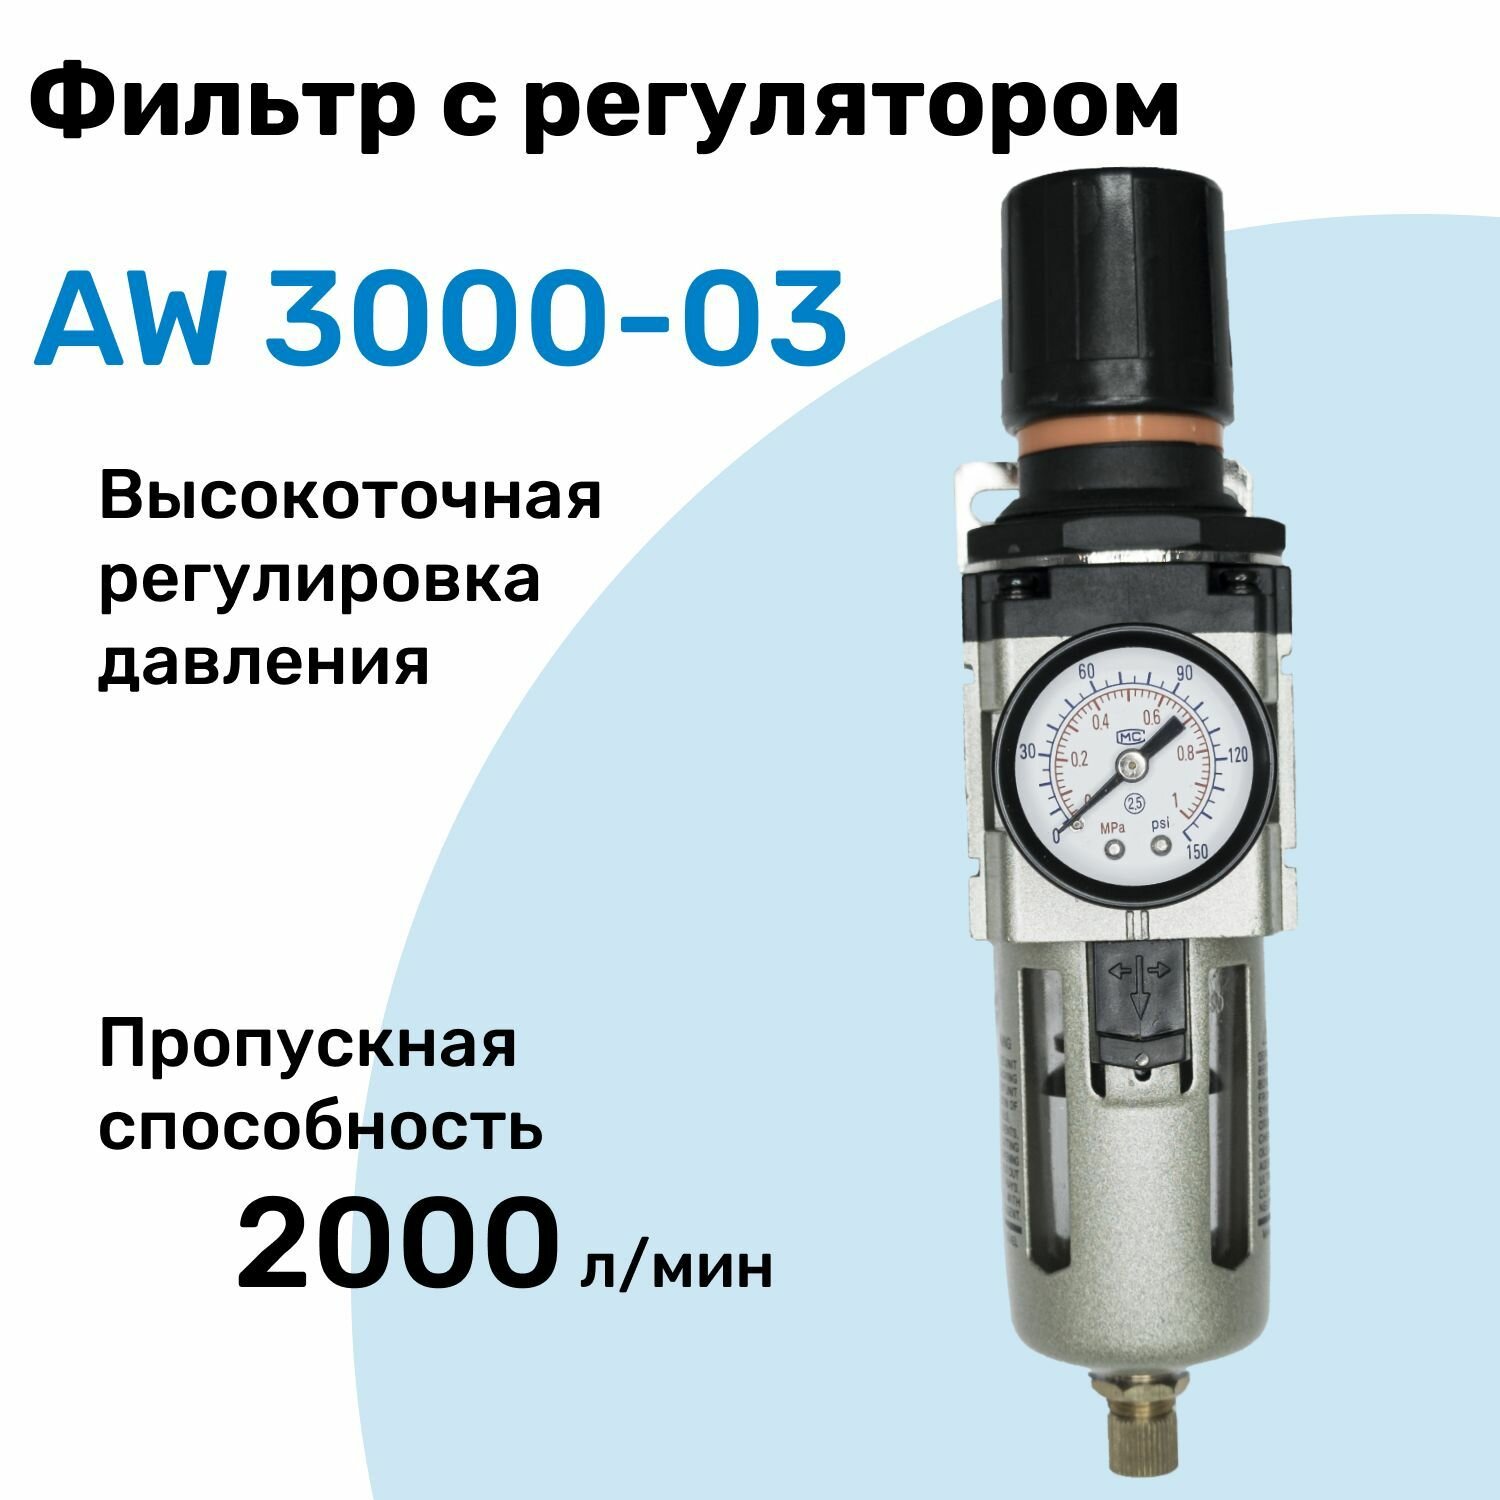 Фильтр с регулятором AW 3000-03, R3/8", Очистка 25мкм, Съемный манометр, Профессиональный Блок подготовки воздуха NBPT